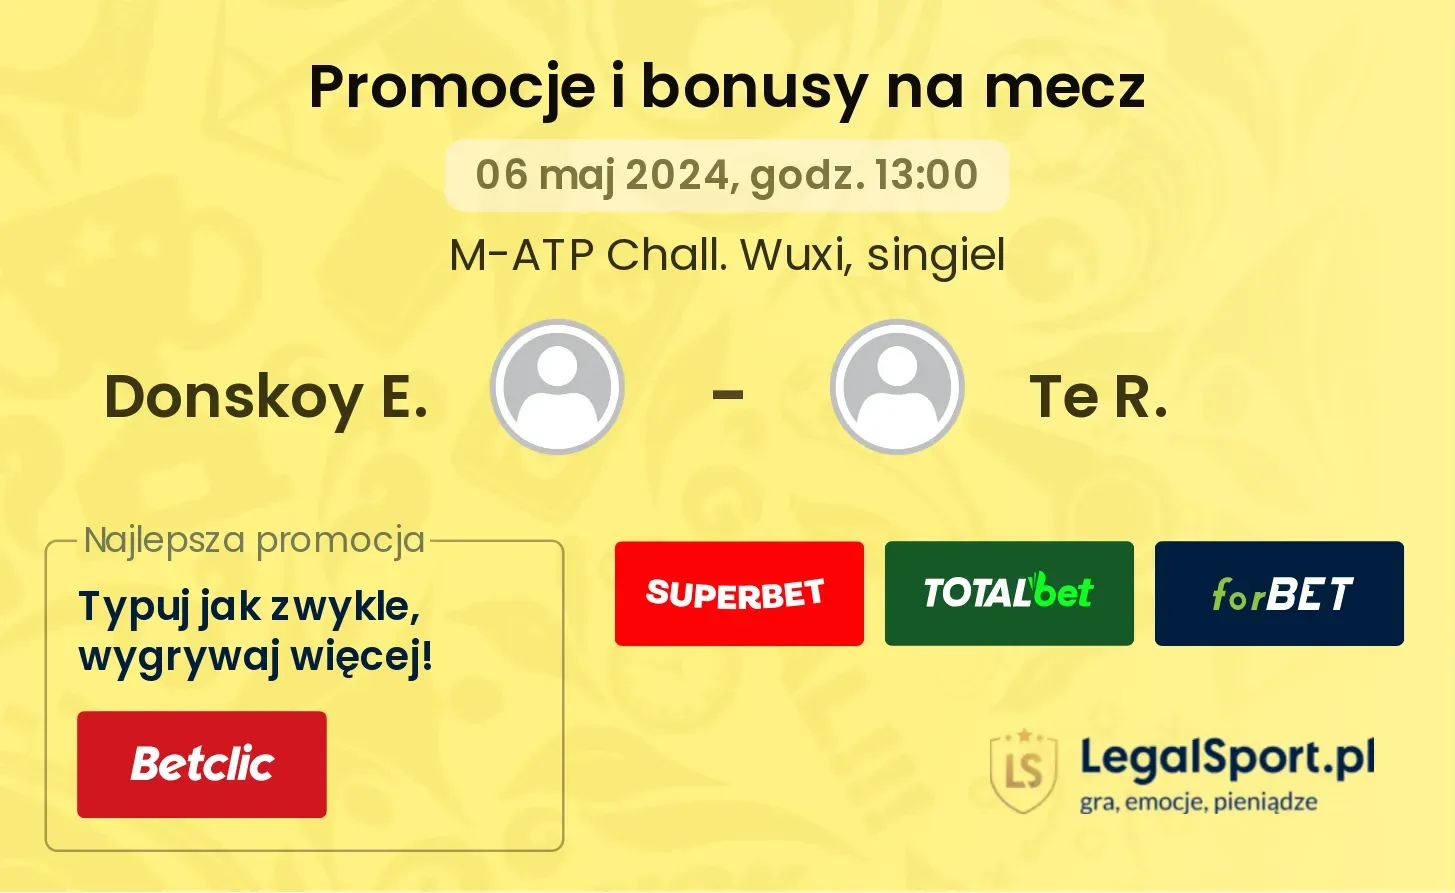 Donskoy E. - Te R. promocje bonusy na mecz